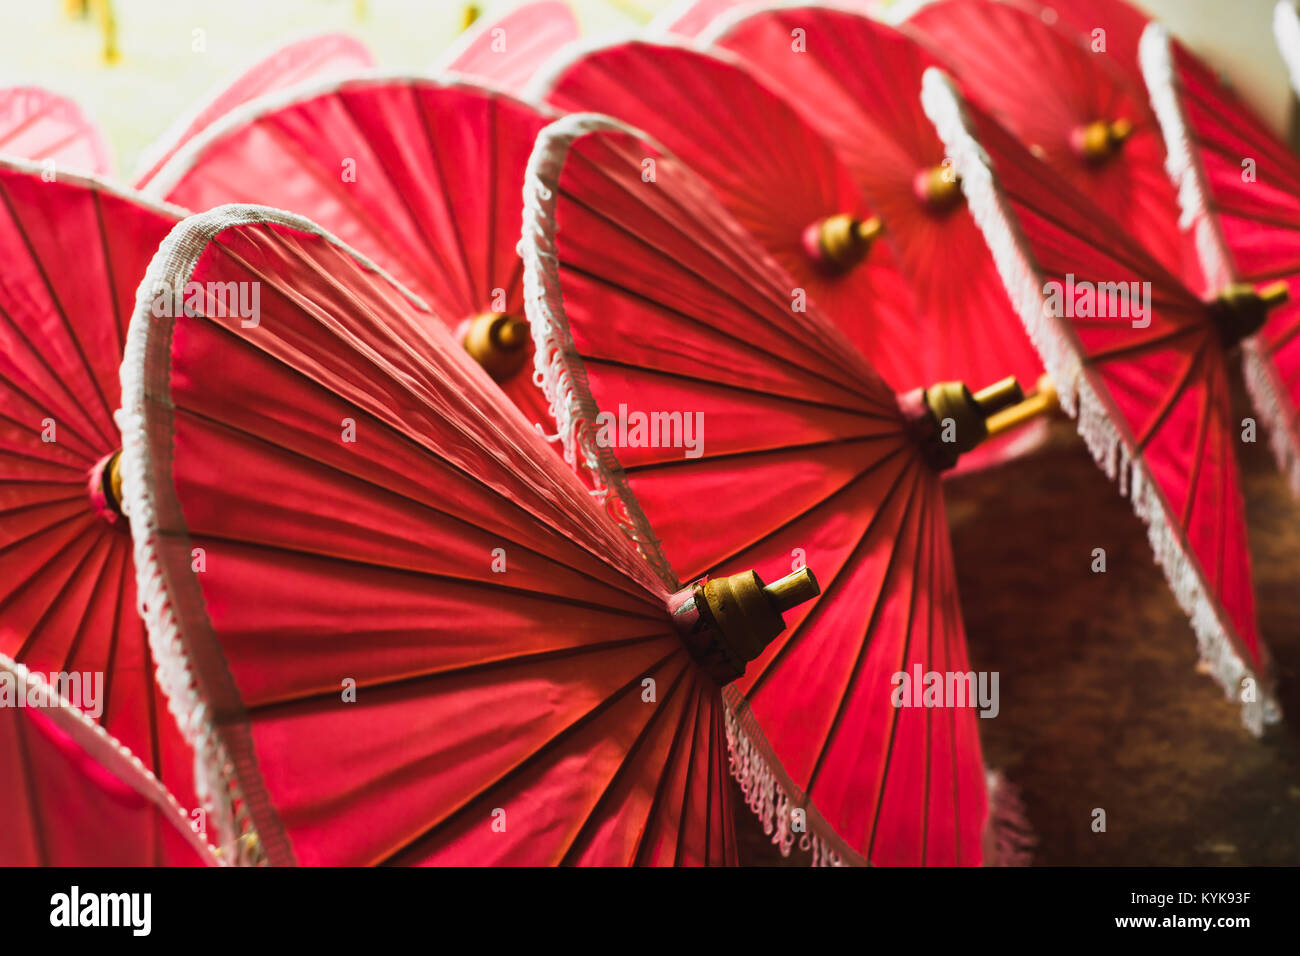 Rotes Papier Stoff der traditionellen asiatischen Sonnenschirme für den Verkauf auf der Straße Markt in Asien Stockfoto